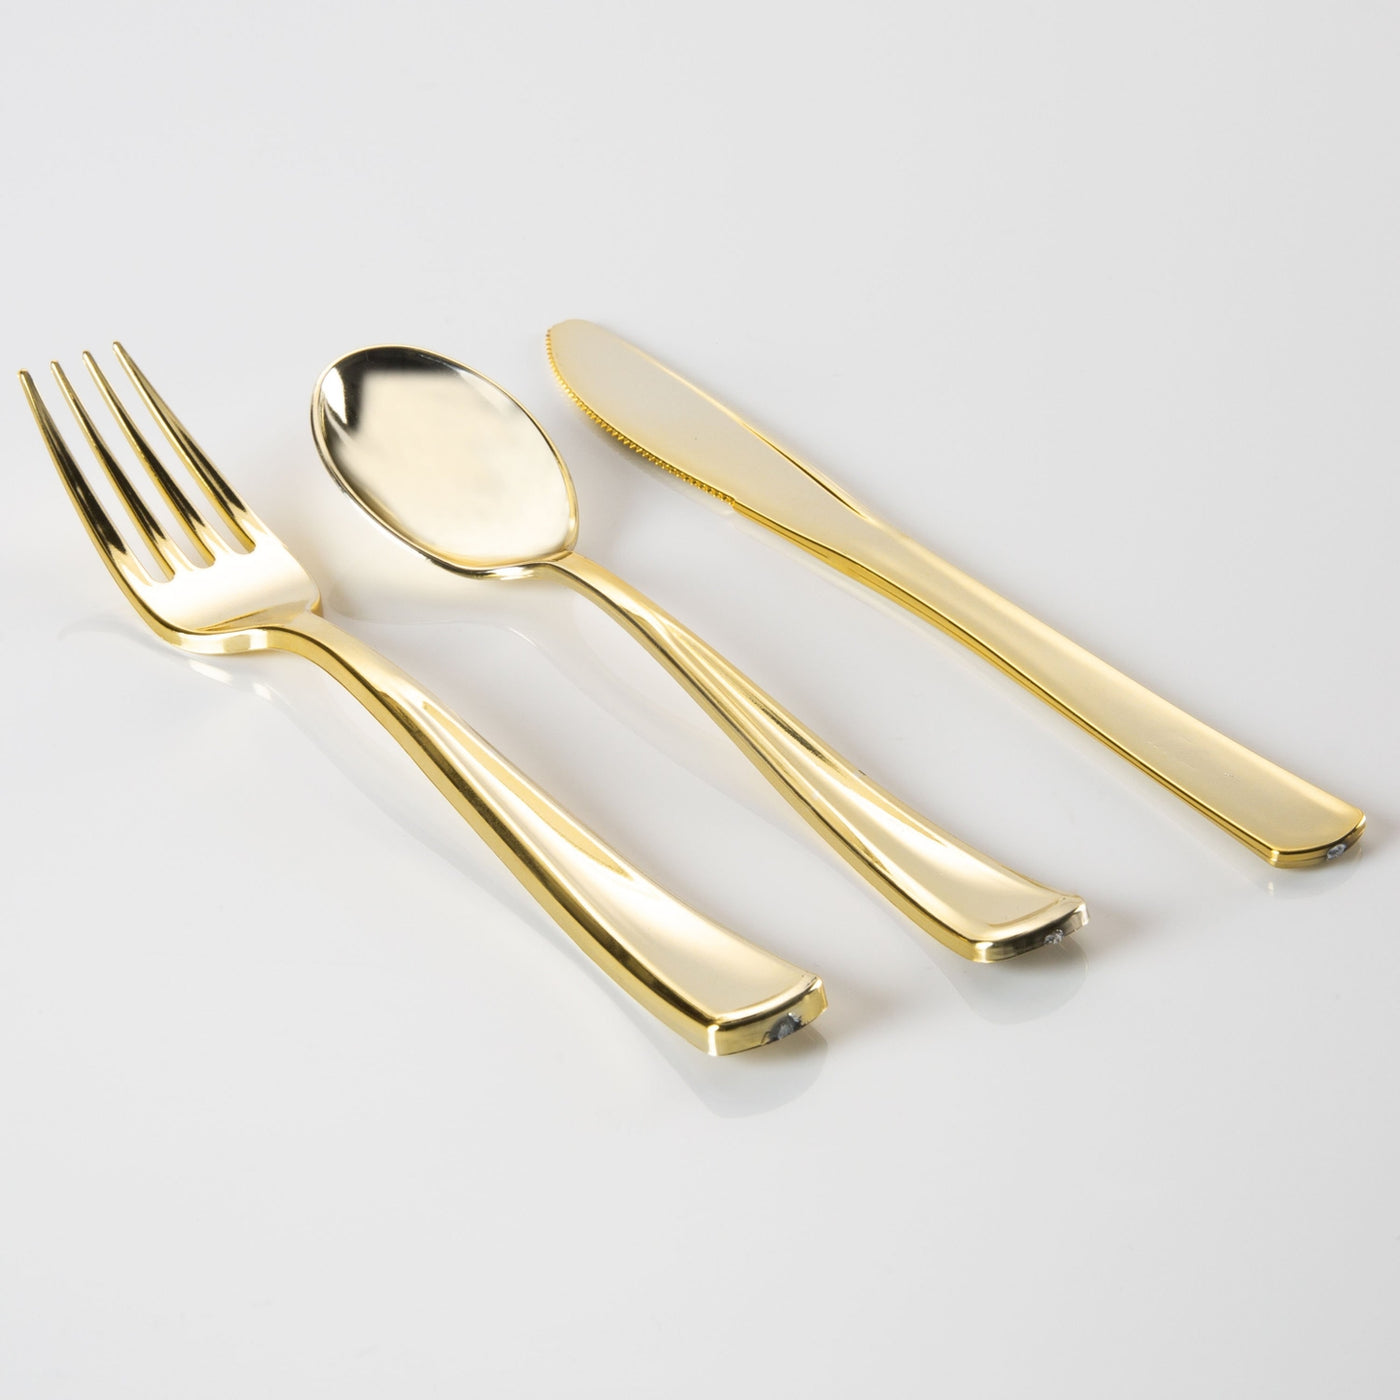 Gold Plastic Culinary Set